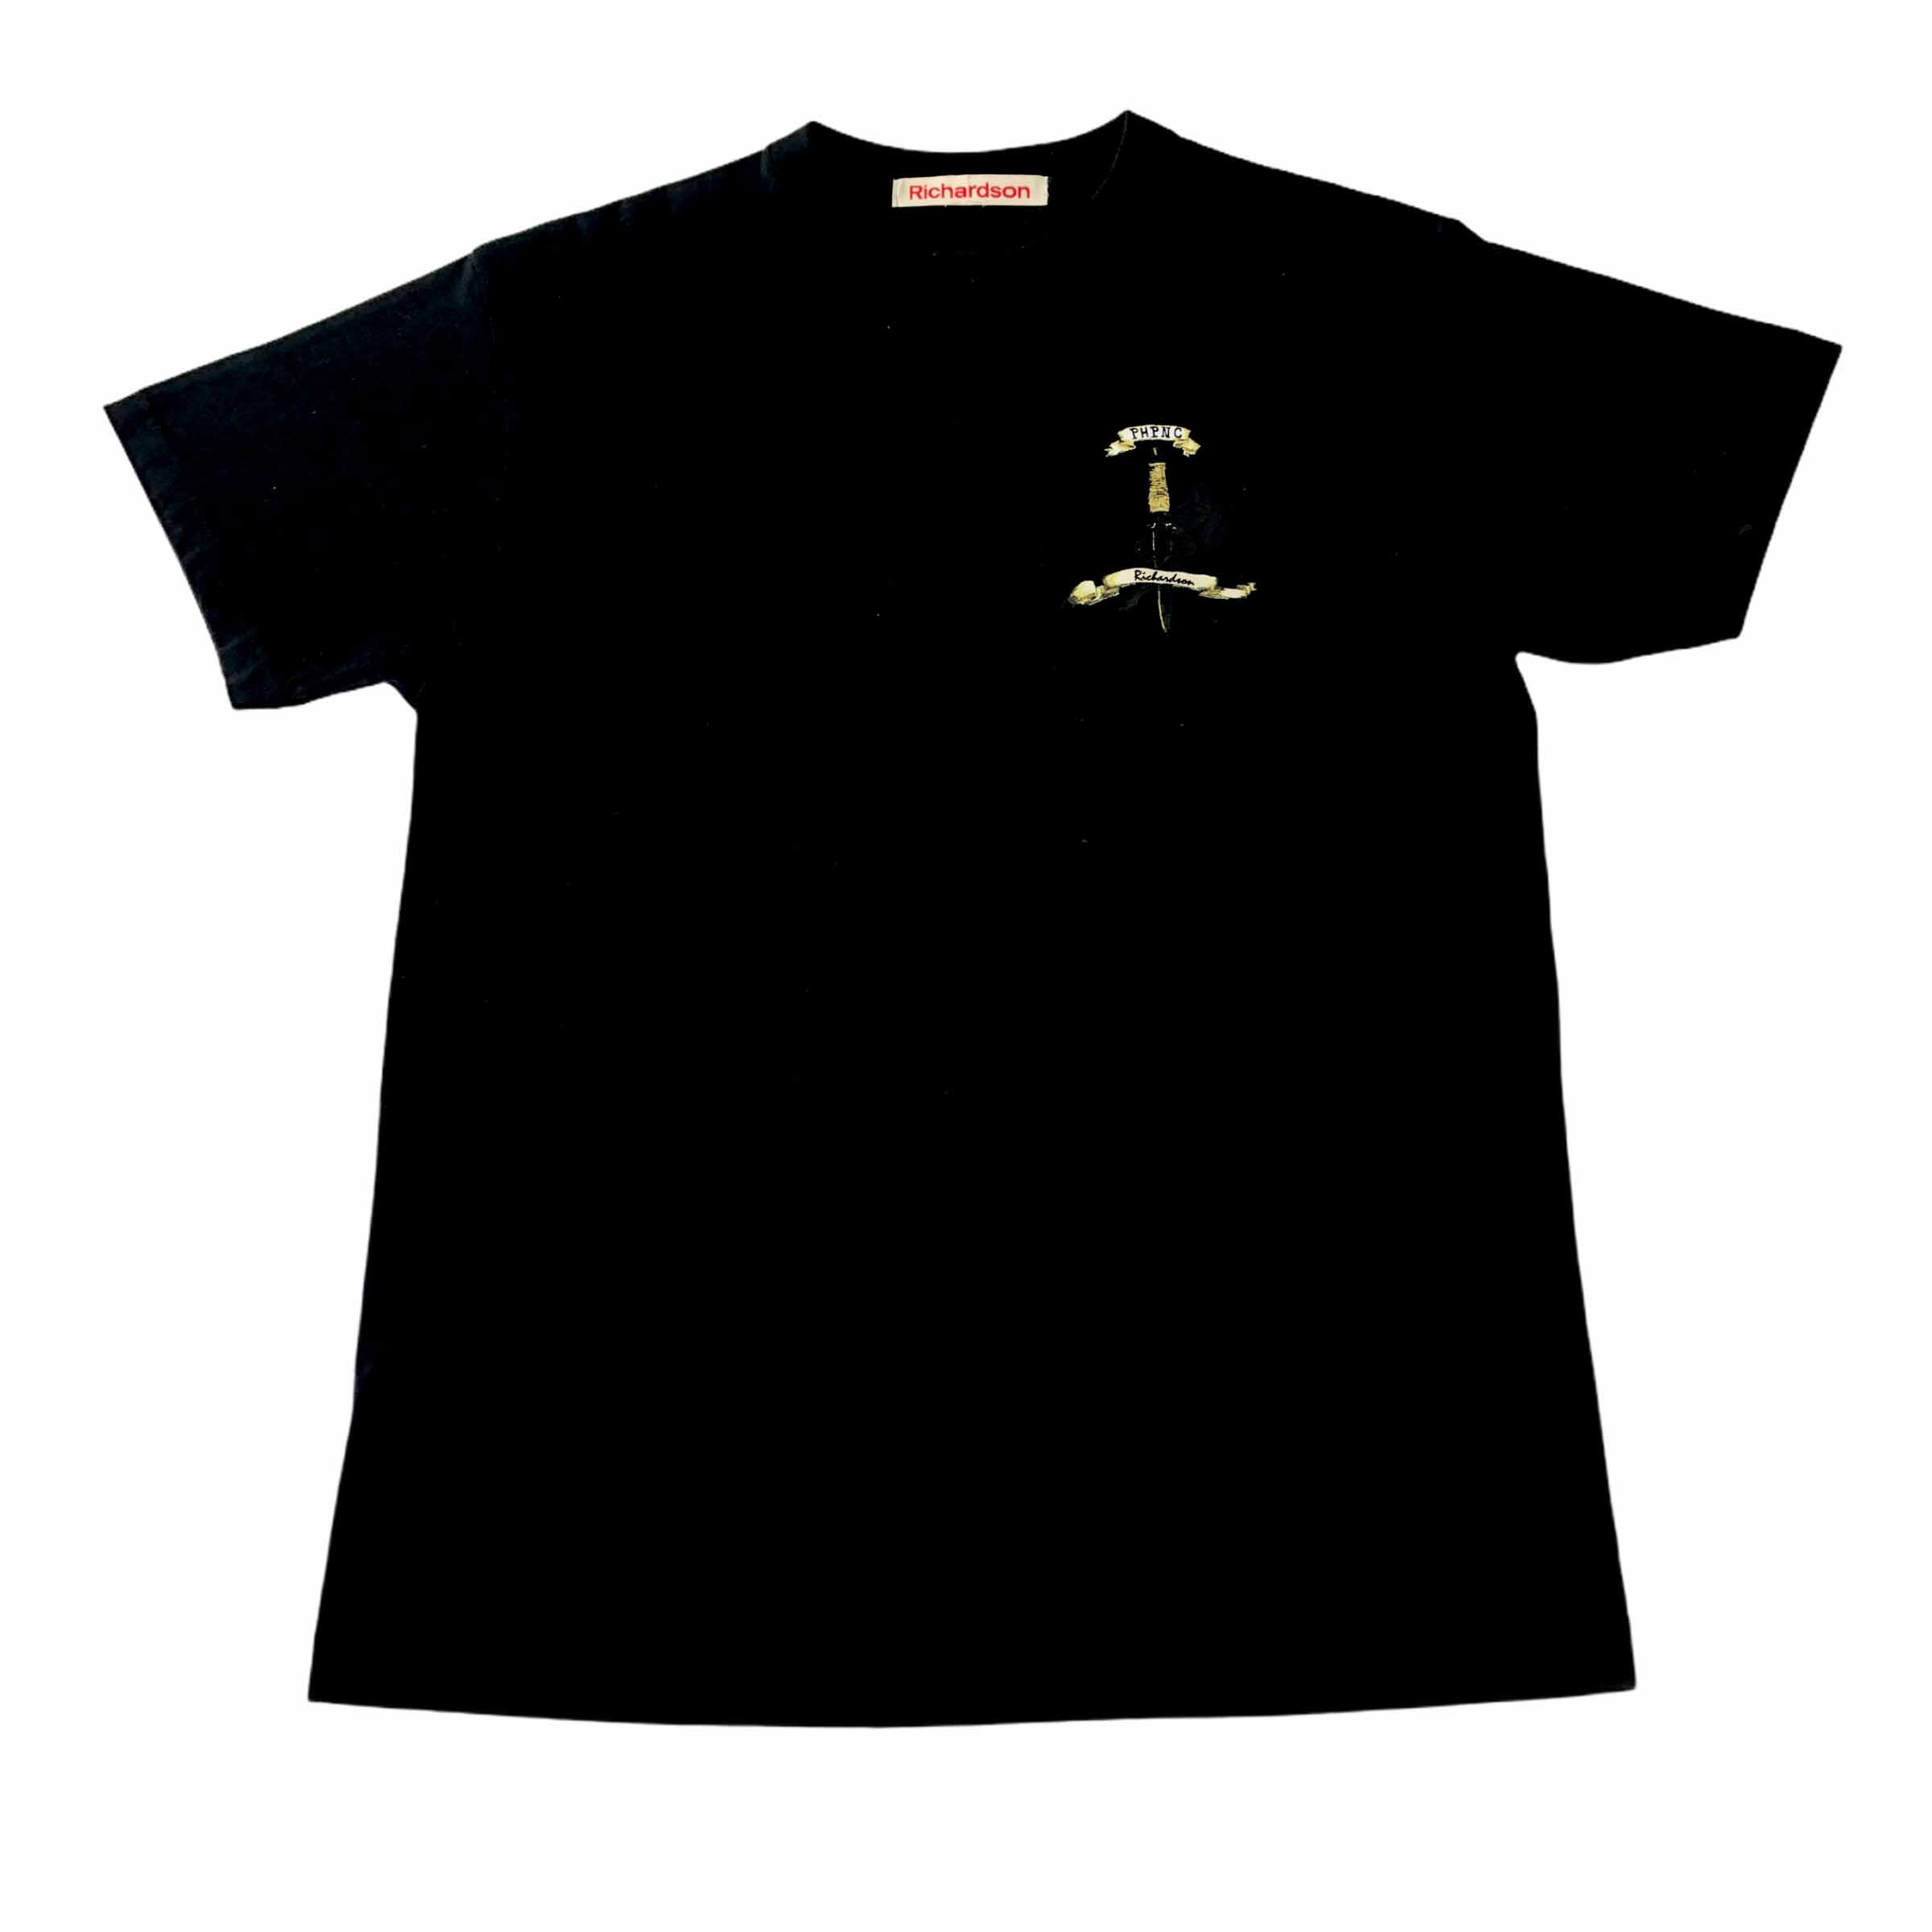 [Richardson] Black PHPNC Tshirt - Size Free